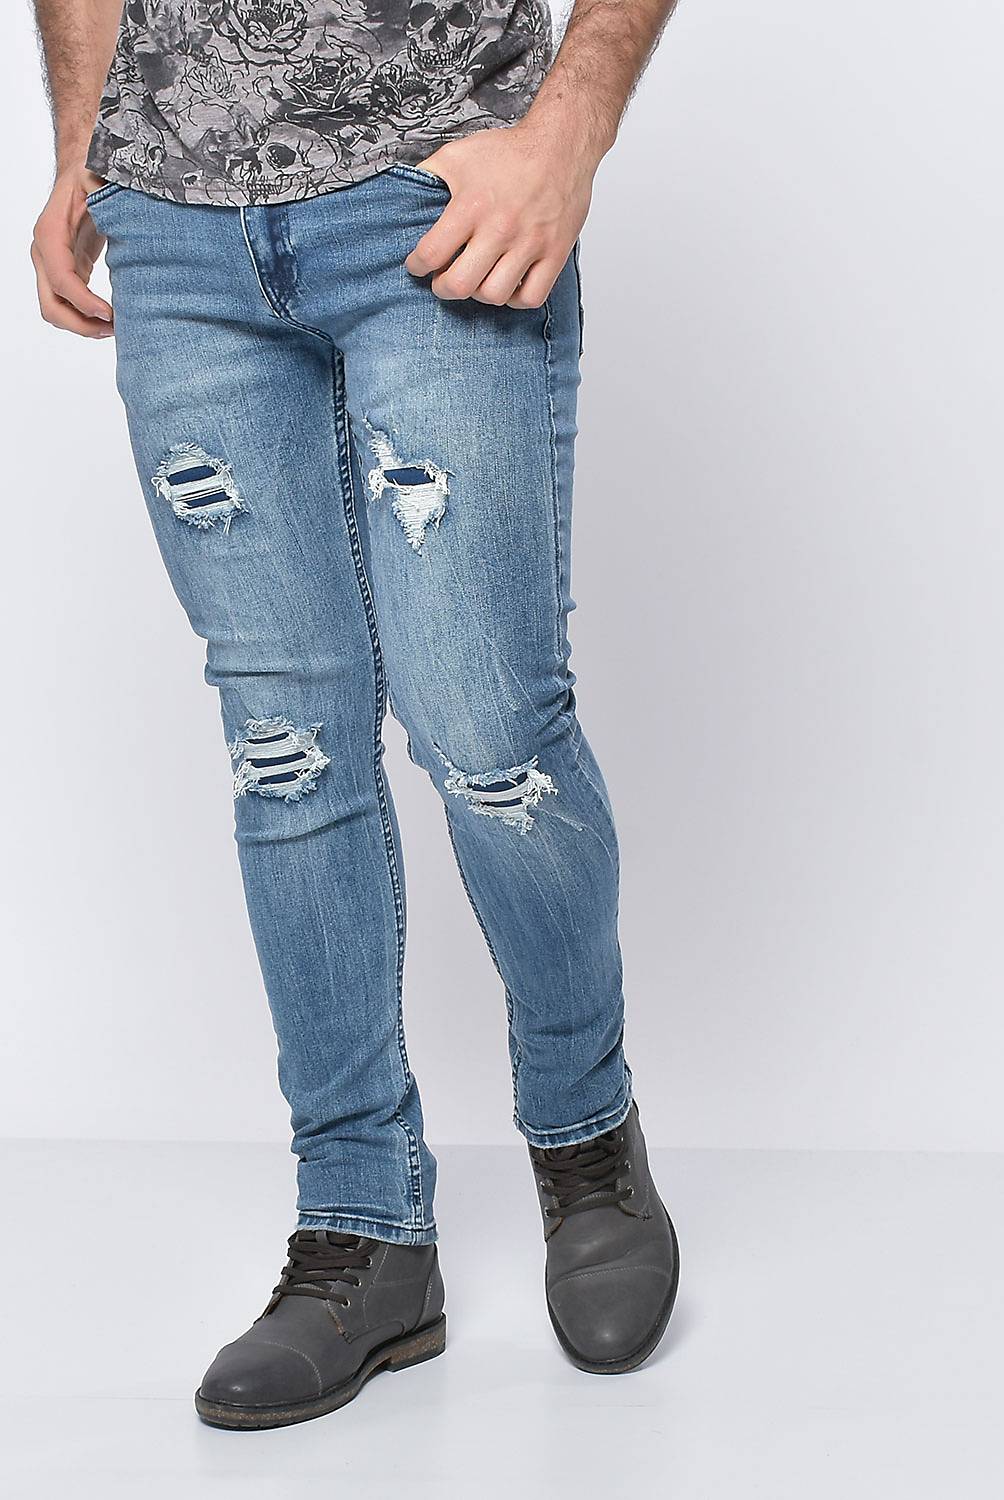 DENIMLAB - Pantalón Jeans Hombre 